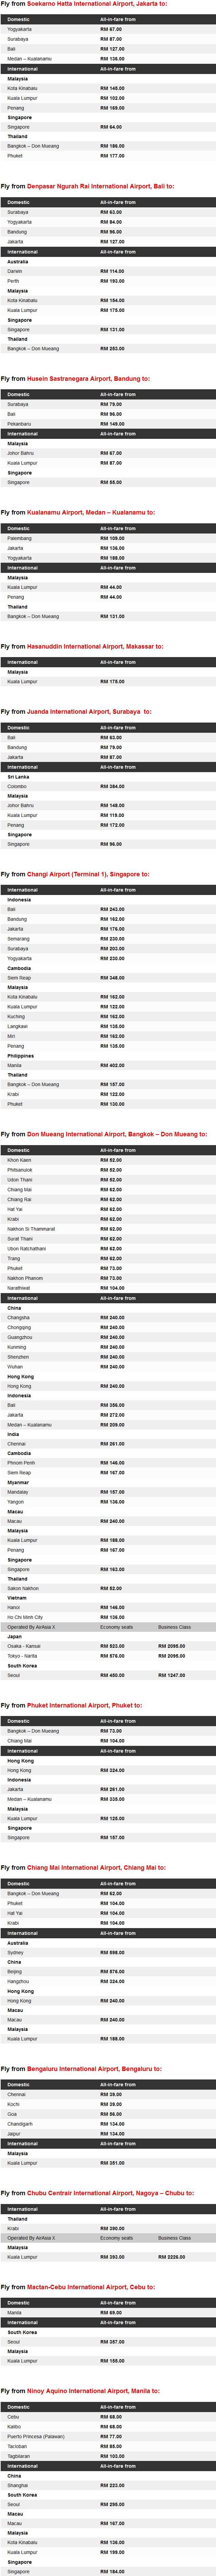 AirAsia 1.5 Million Seats On Sale